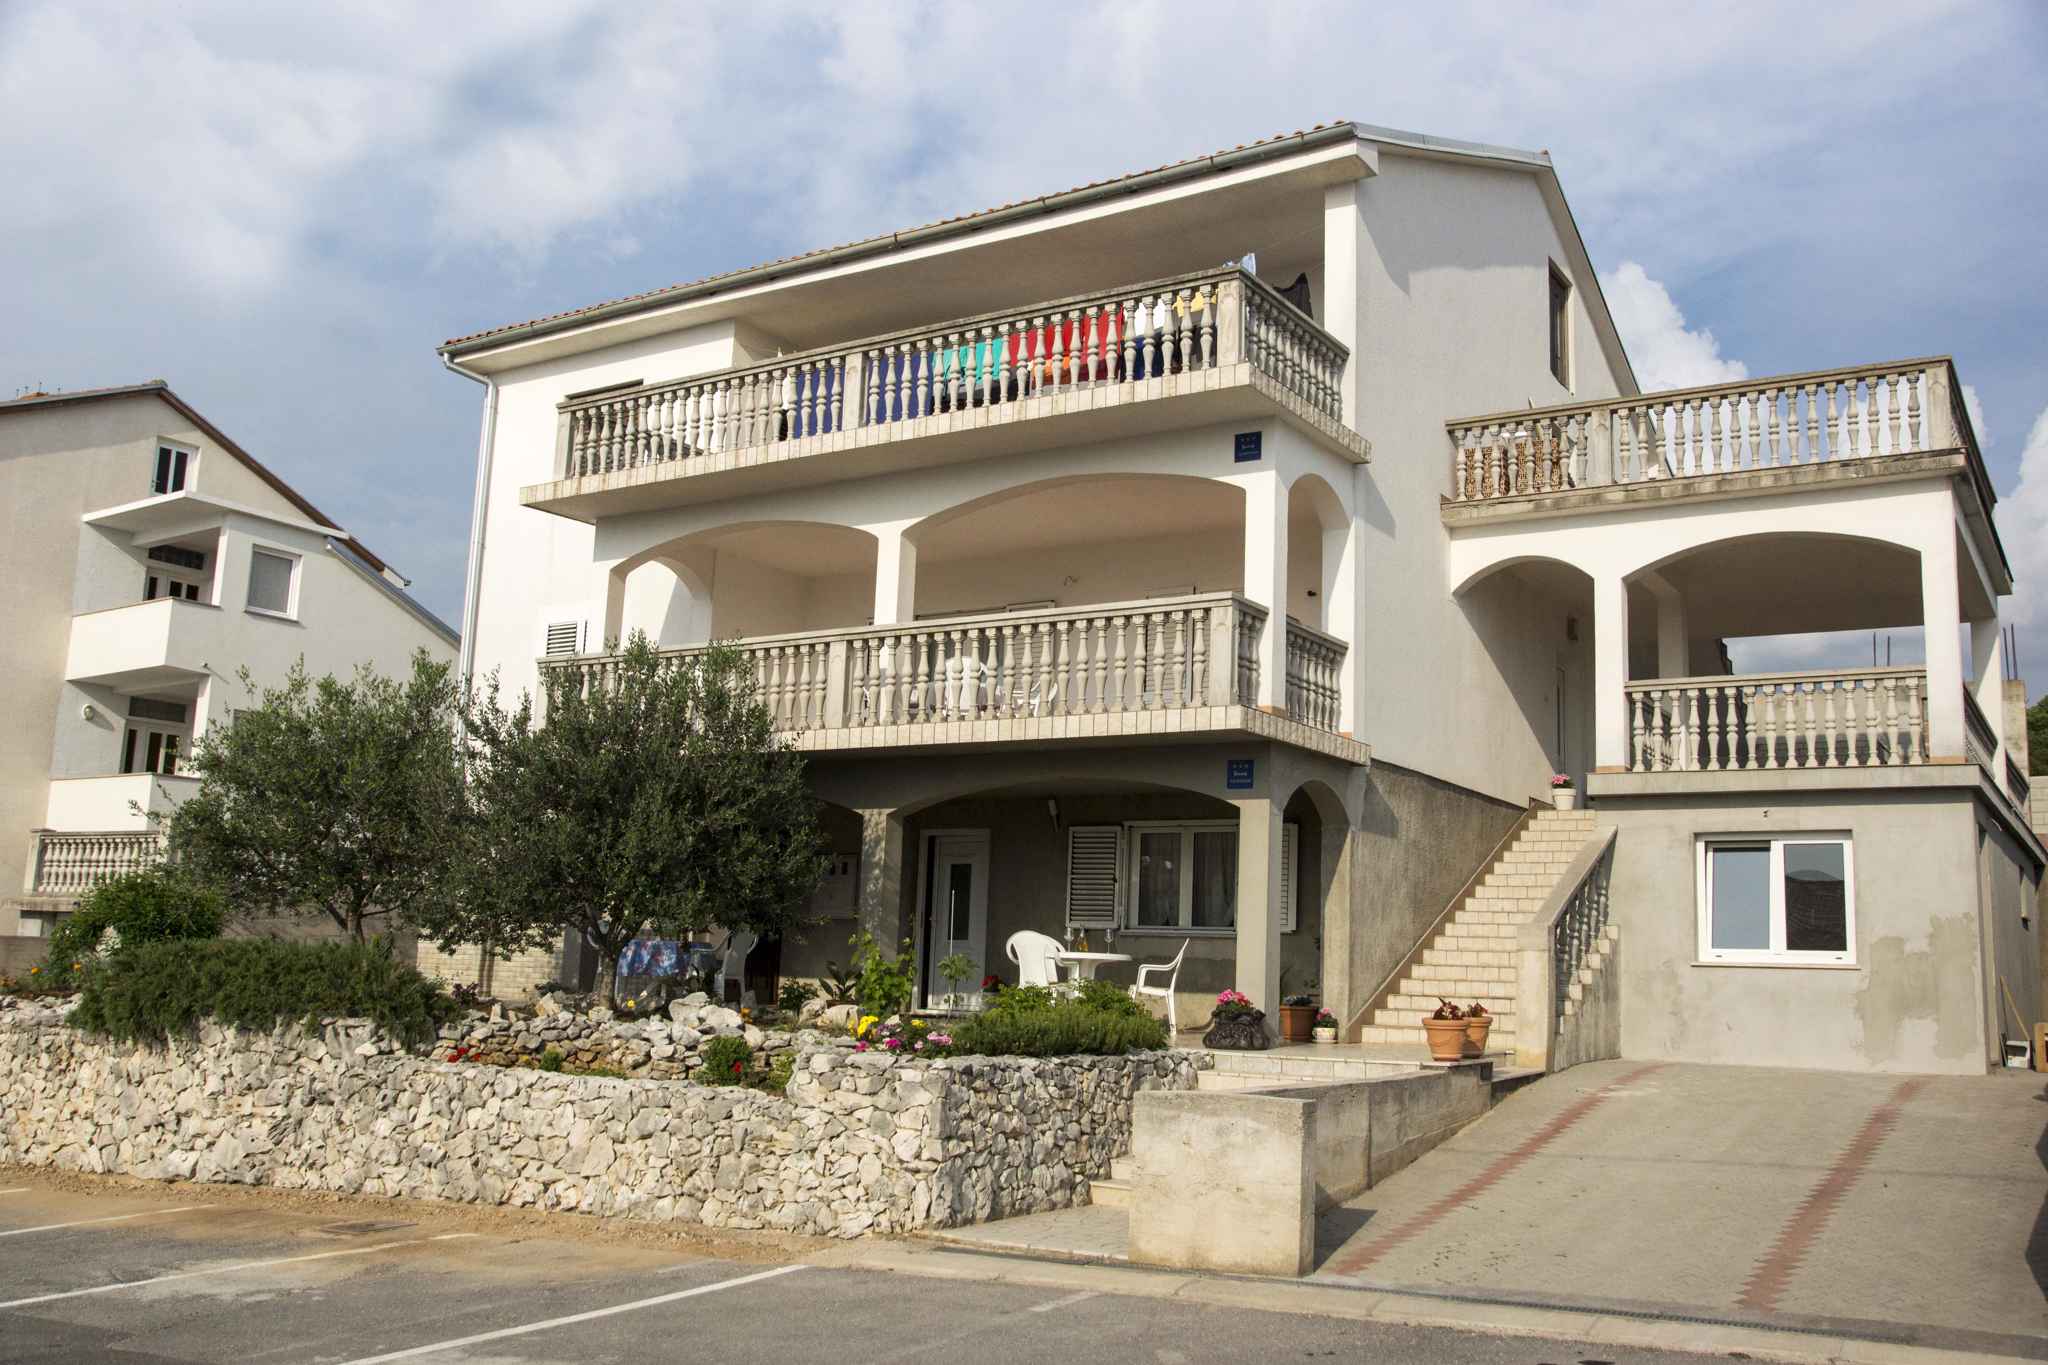 Ferienwohnung mit großer Terrasse und WI-FI  in Kroatien